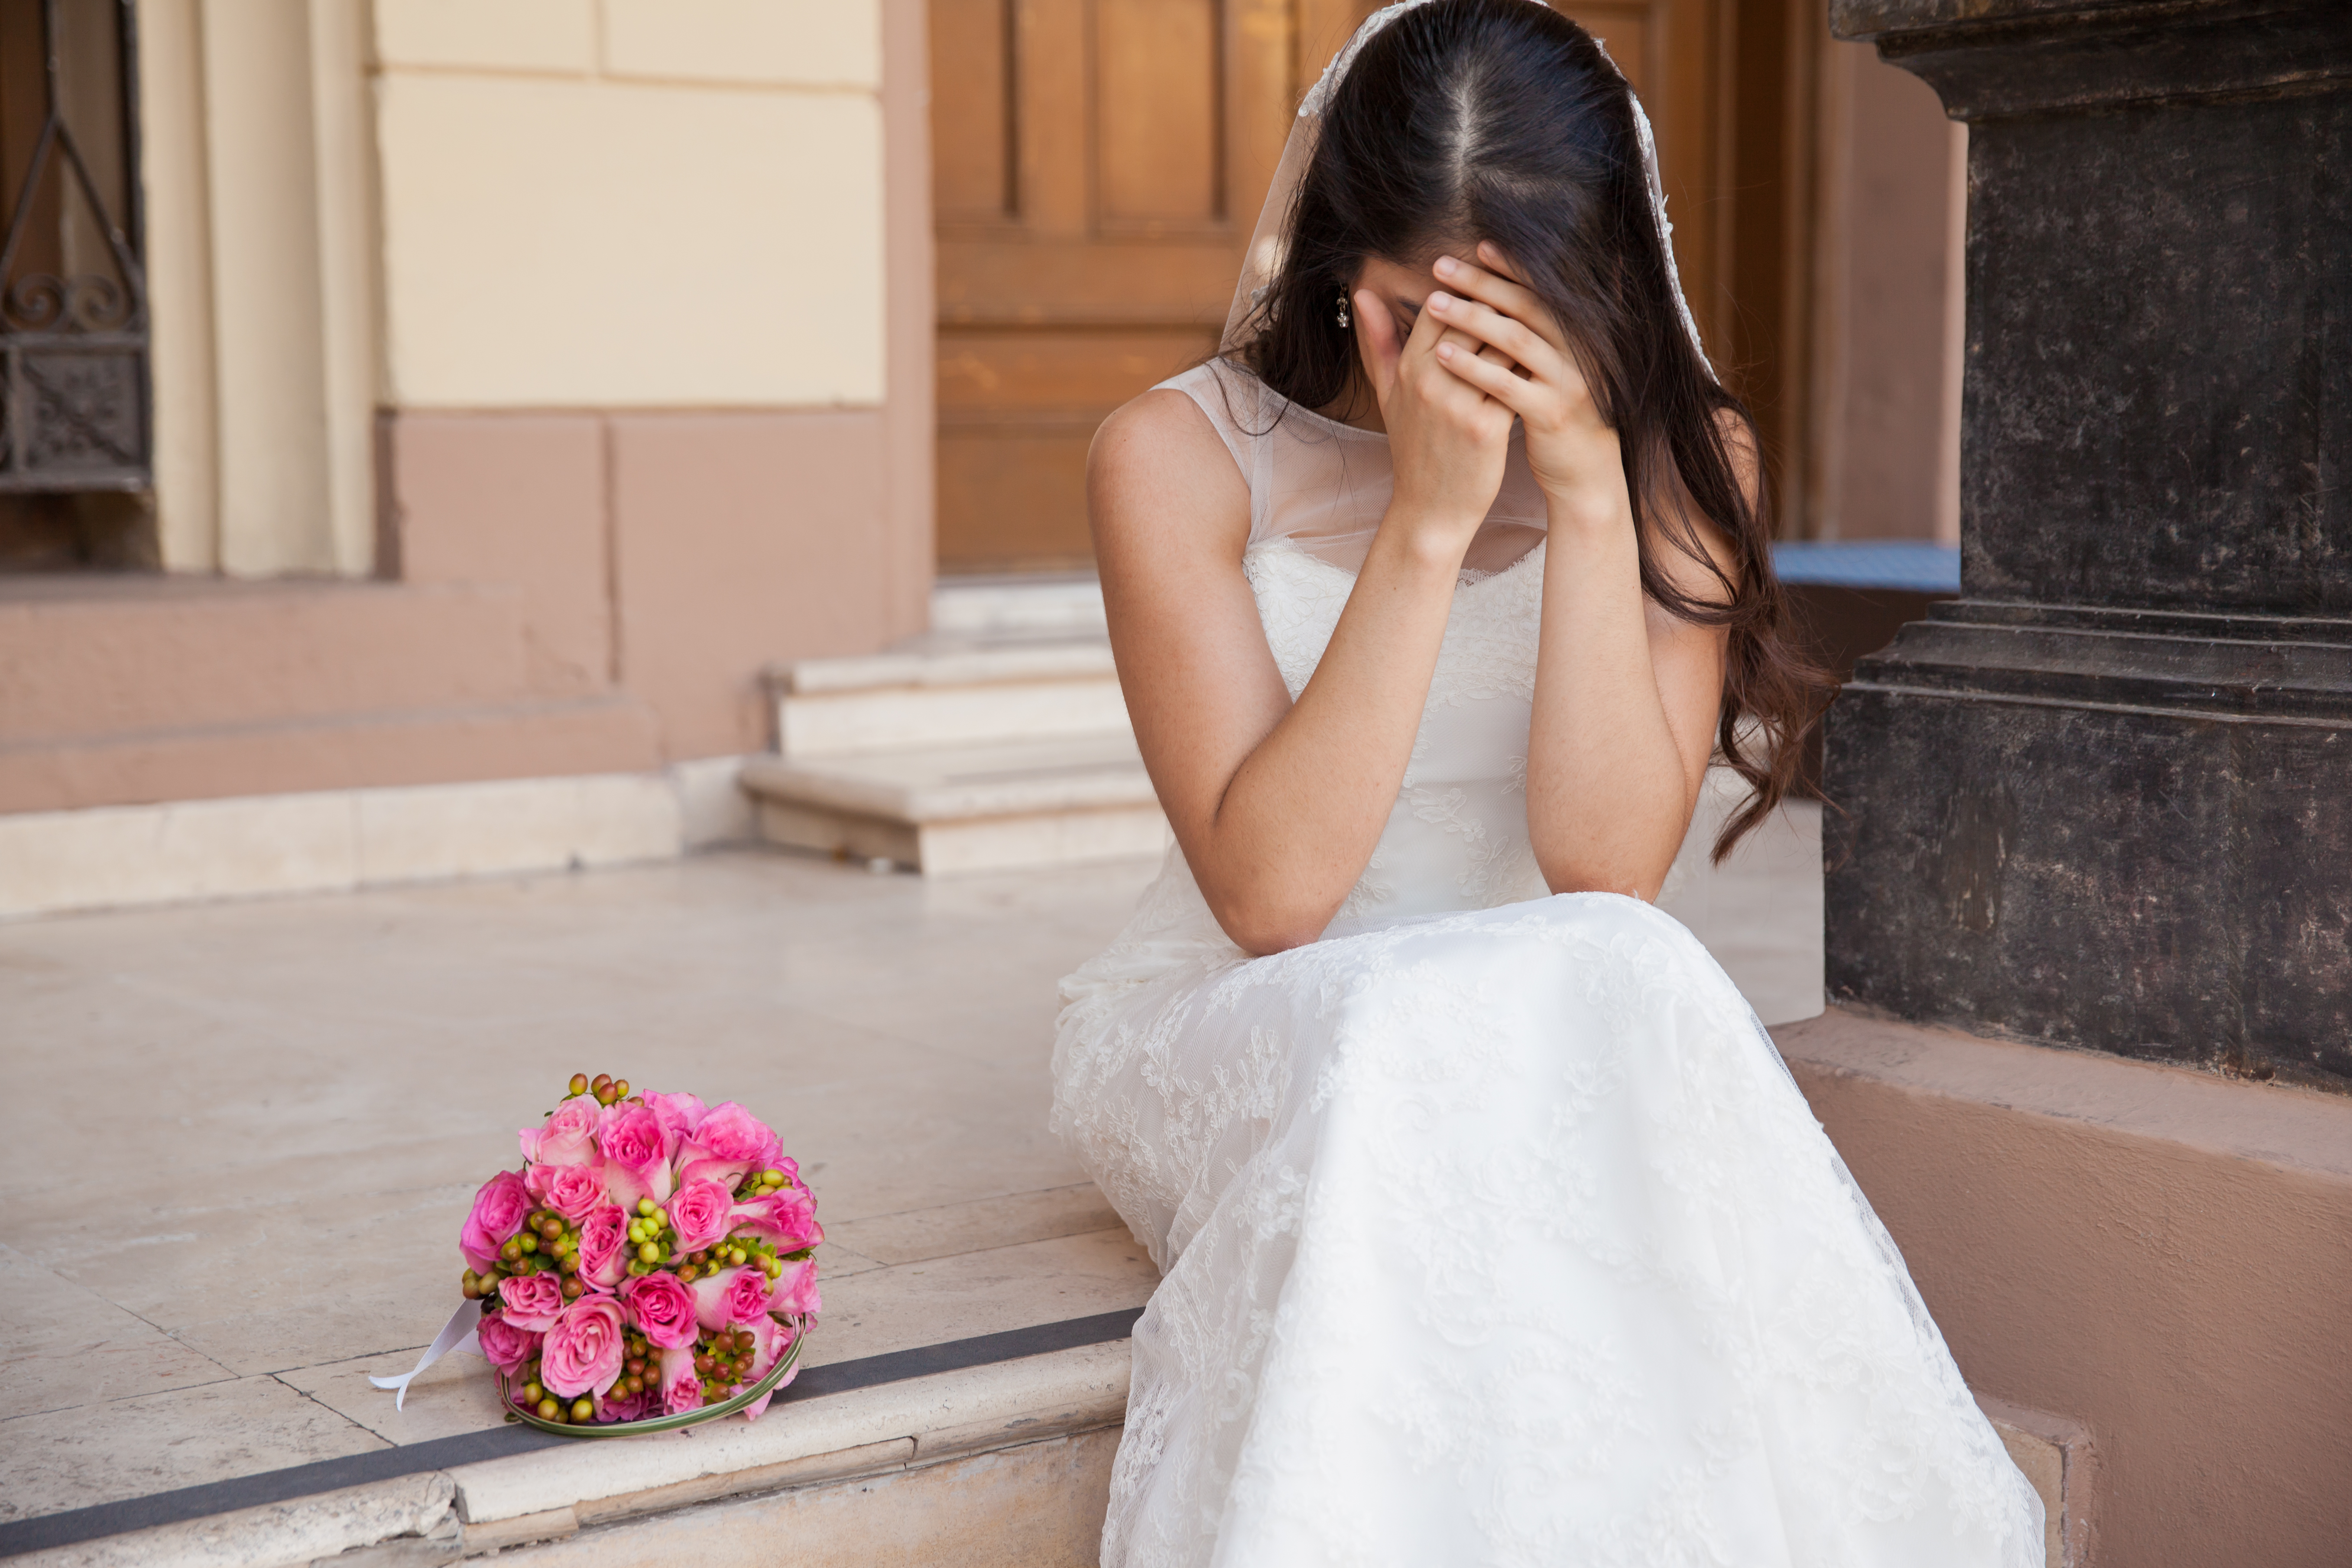 Une mariée bouleversée | Source : Getty Images